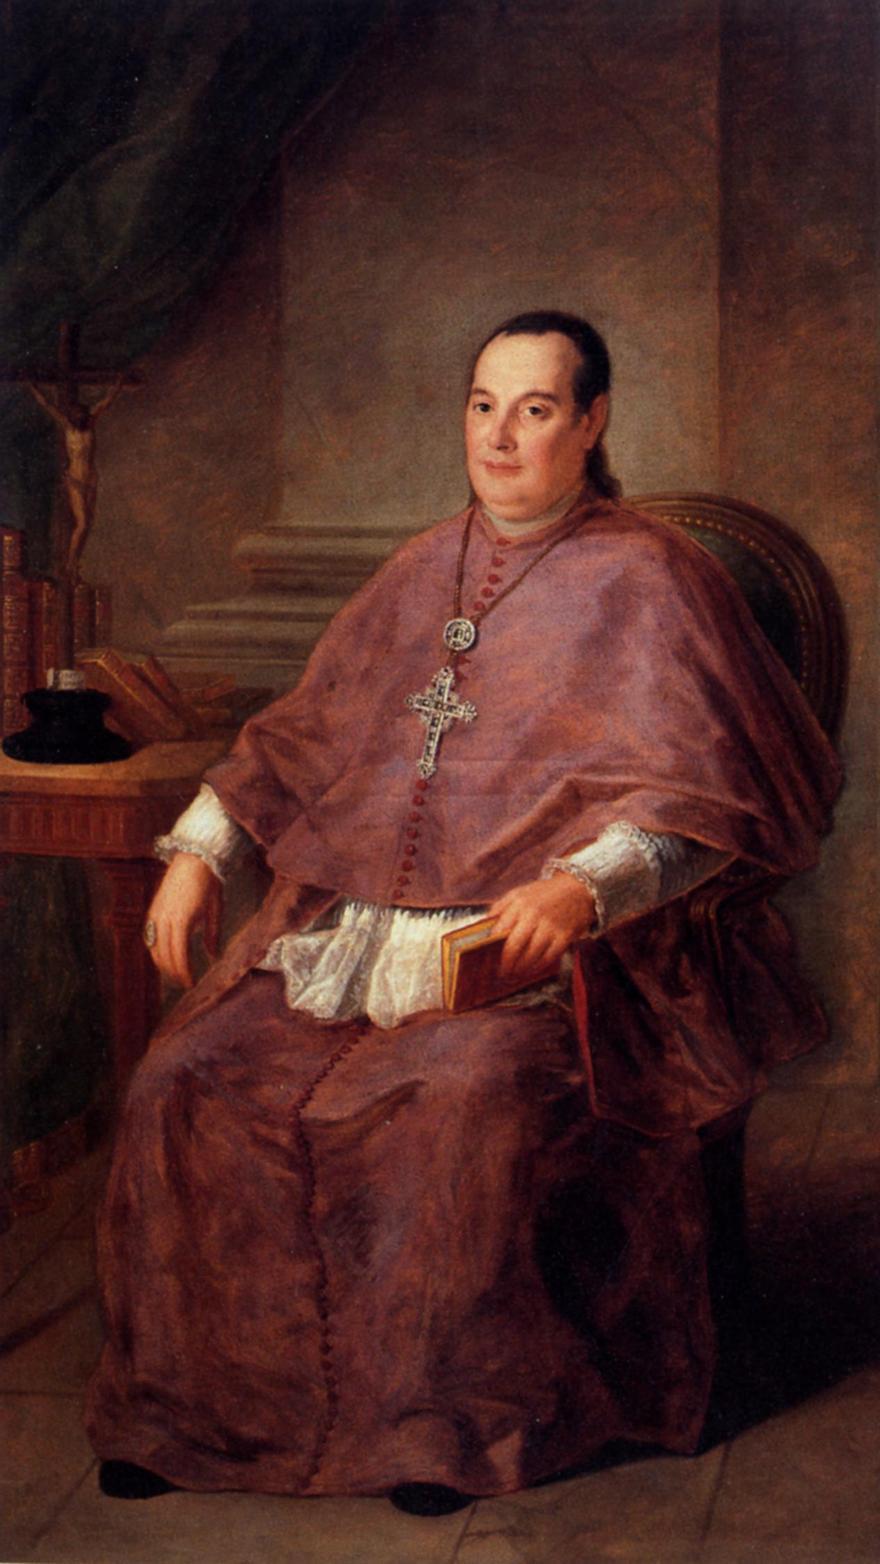 Retrato del Obispo de Canarias, el grancanario don Manuel Verdugo, a comienzos del siglo XIX